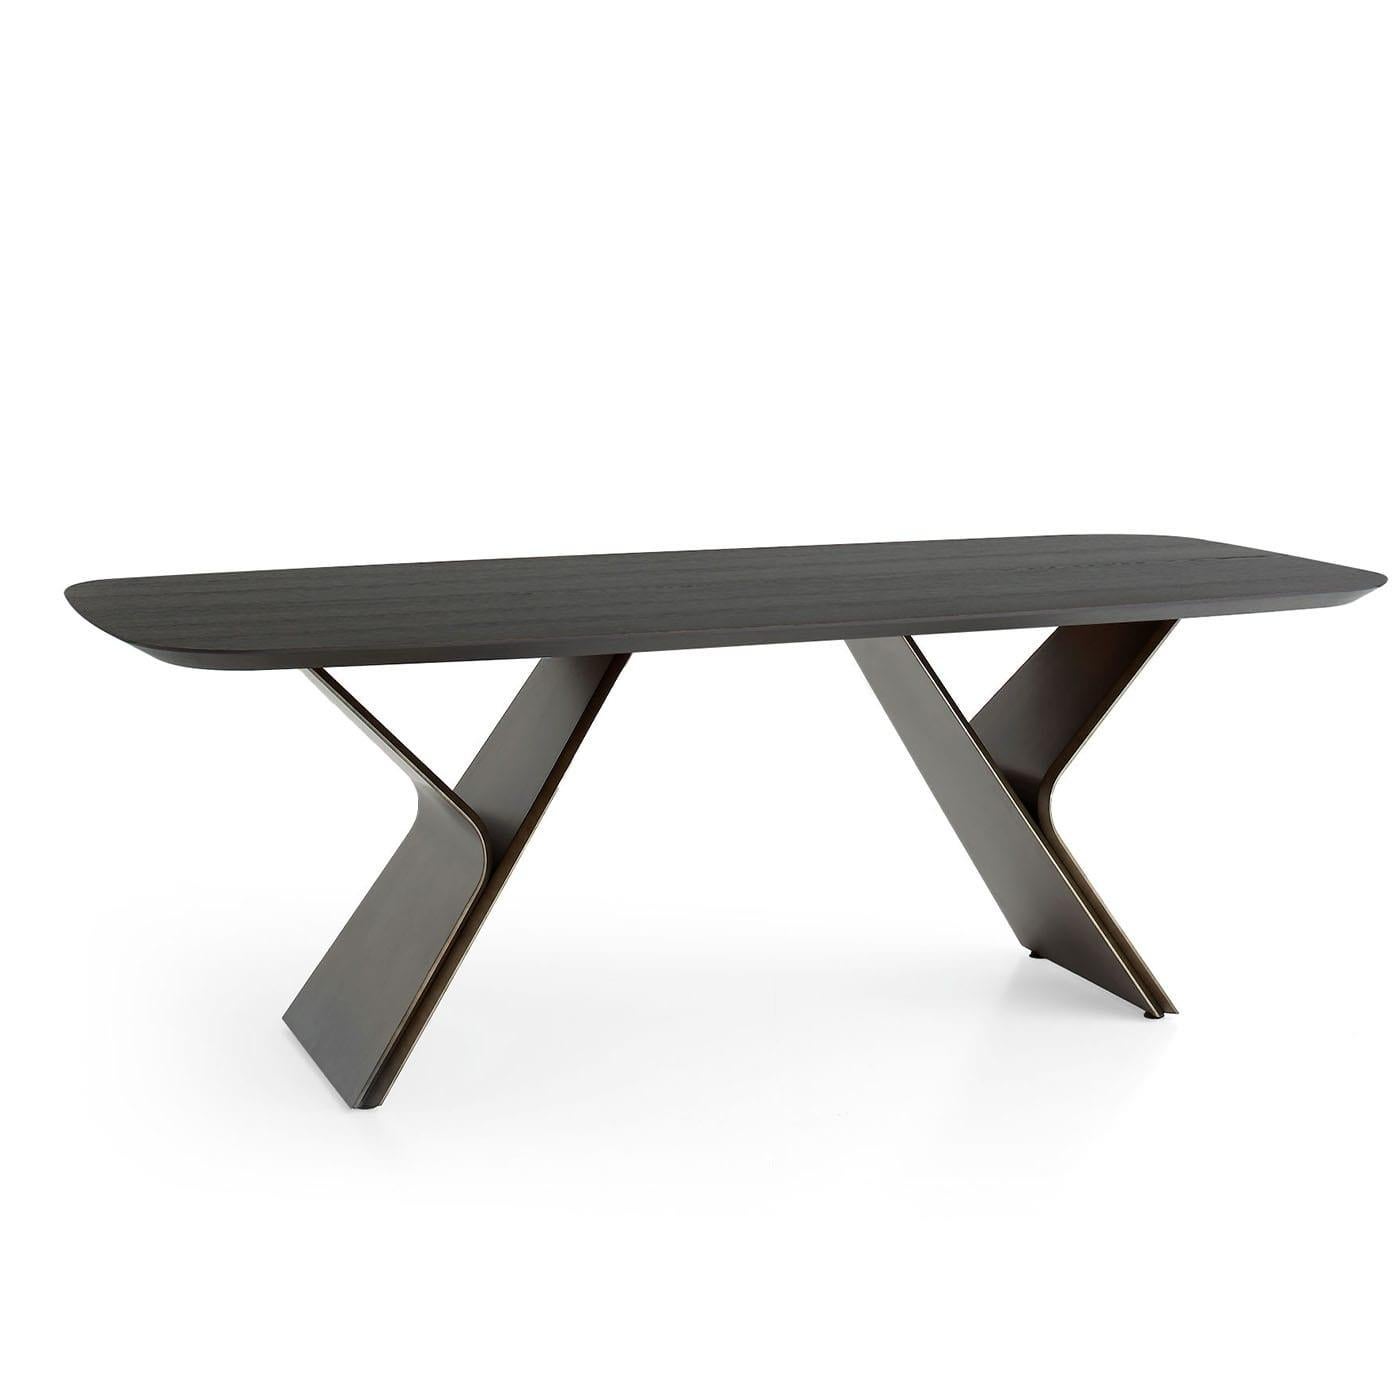 D'allure sculpturale, cette table révèle son esprit moderne puisque sa base dynamique est obtenue par l'assemblage de panneaux de MDF finition bronze oxydé. Des lignes sinueuses et des finitions métalliques évoquant des planètes inexplorées ont